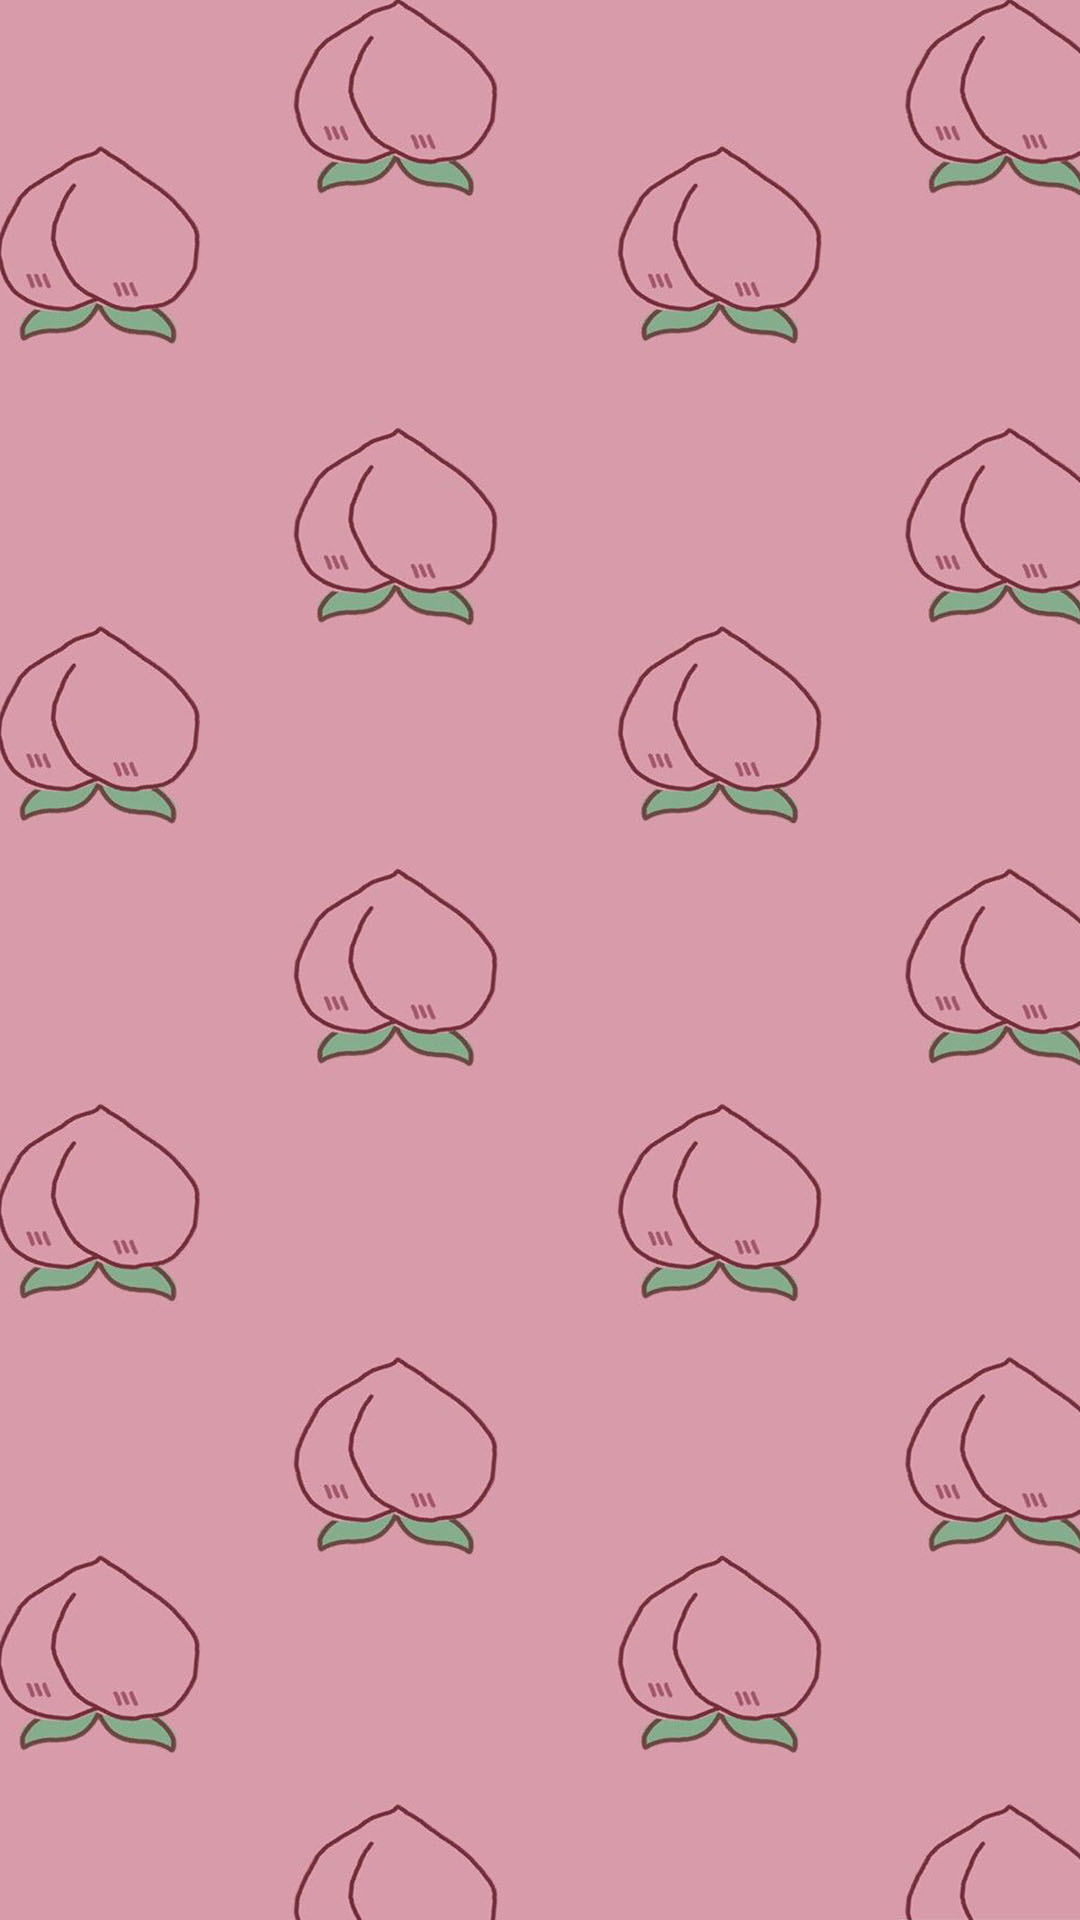 Peach Emoji Wallpapers  Top Những Hình Ảnh Đẹp